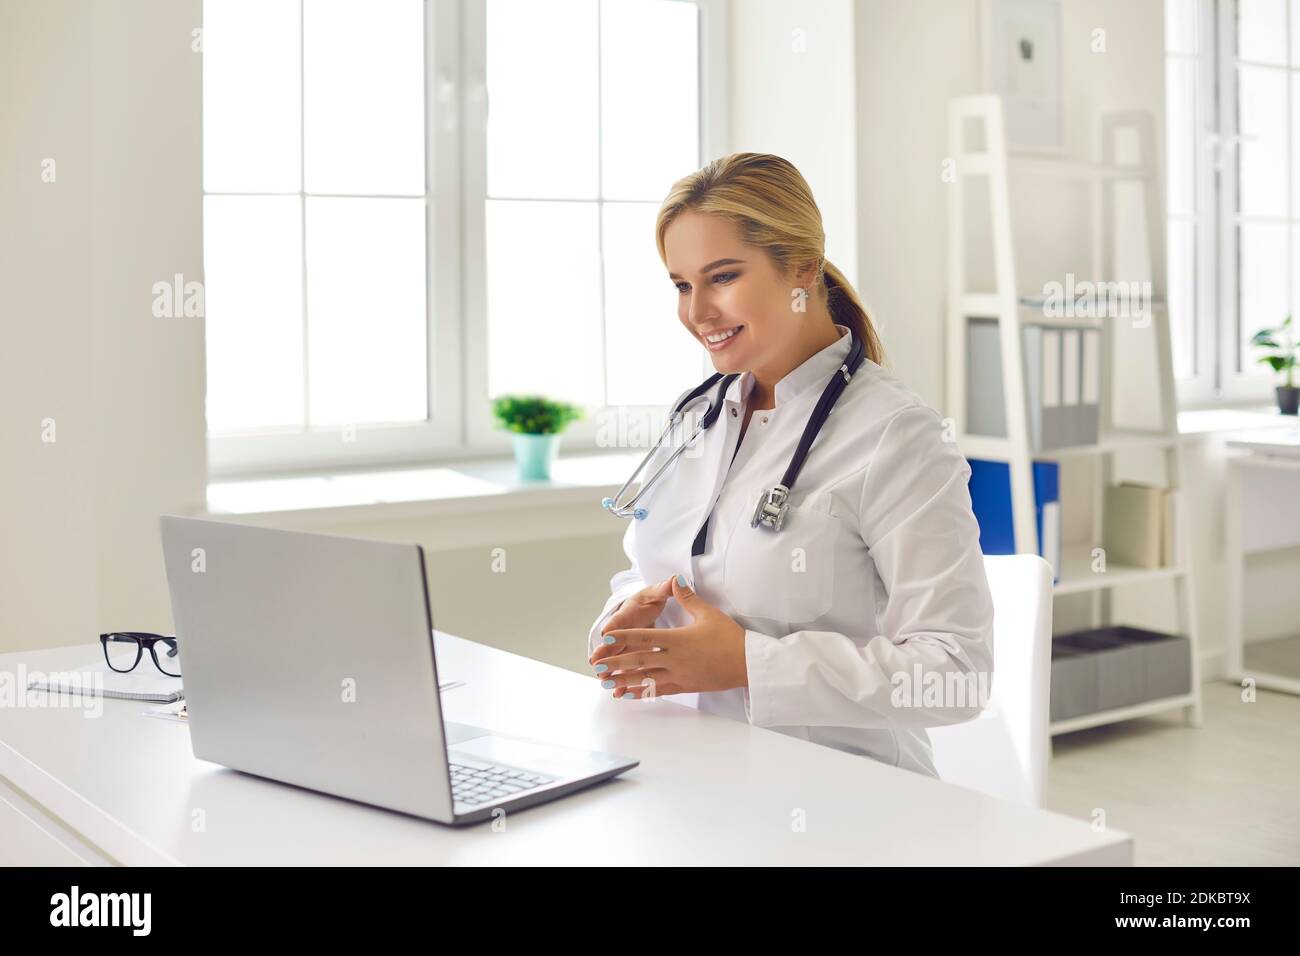 Médecin souriant donnant la consultation de santé au patient pendant l'appel vidéo sur un ordinateur portable moderne Banque D'Images